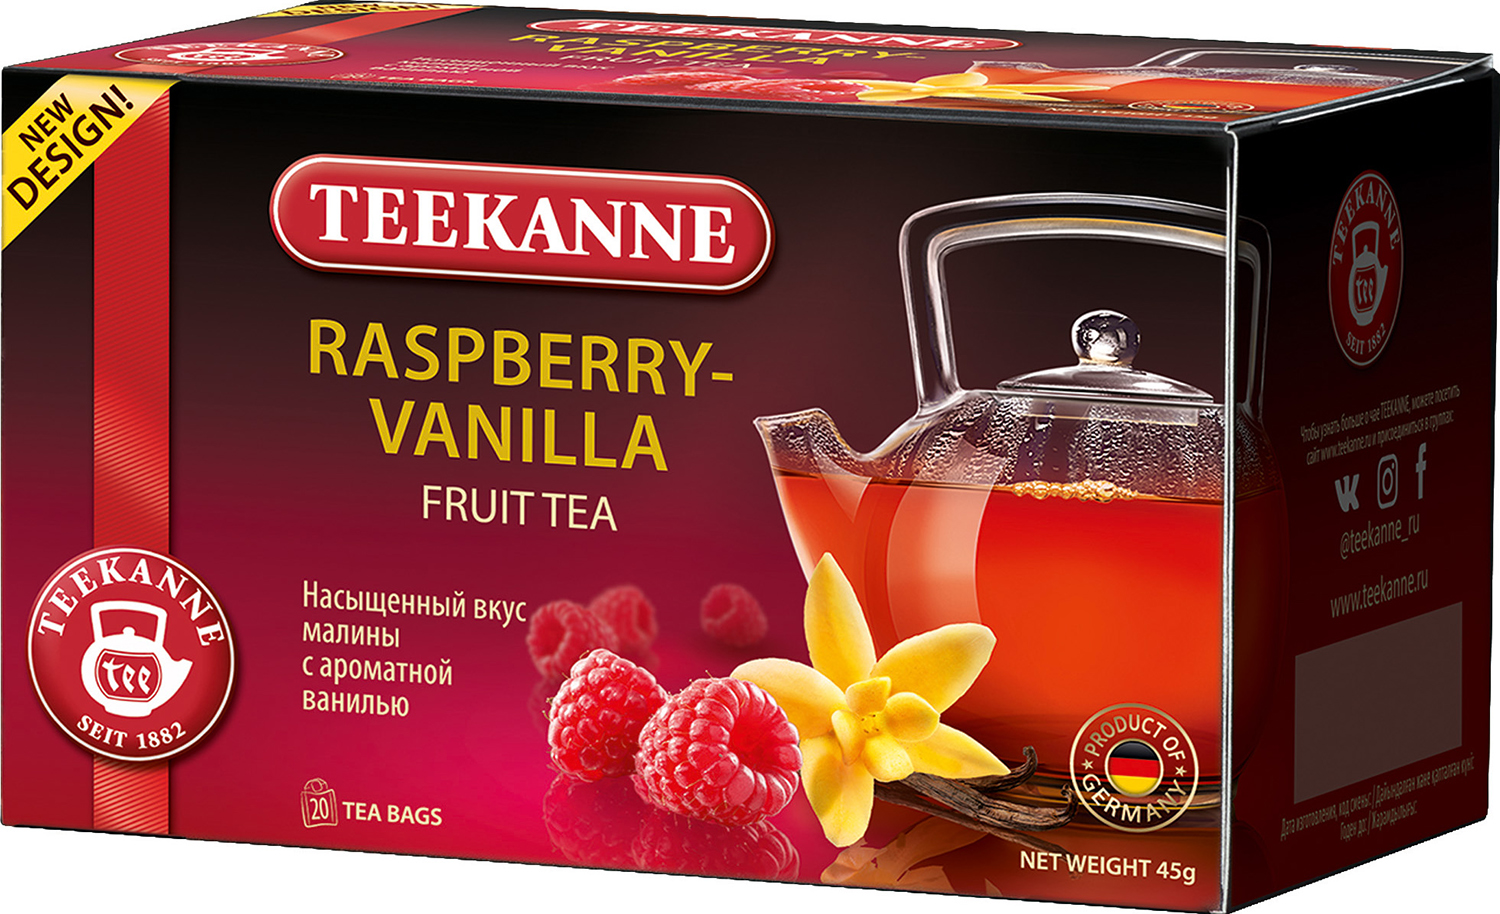 Чайный напиток Teekane малина и ваниль, 2 шт х 20 пак